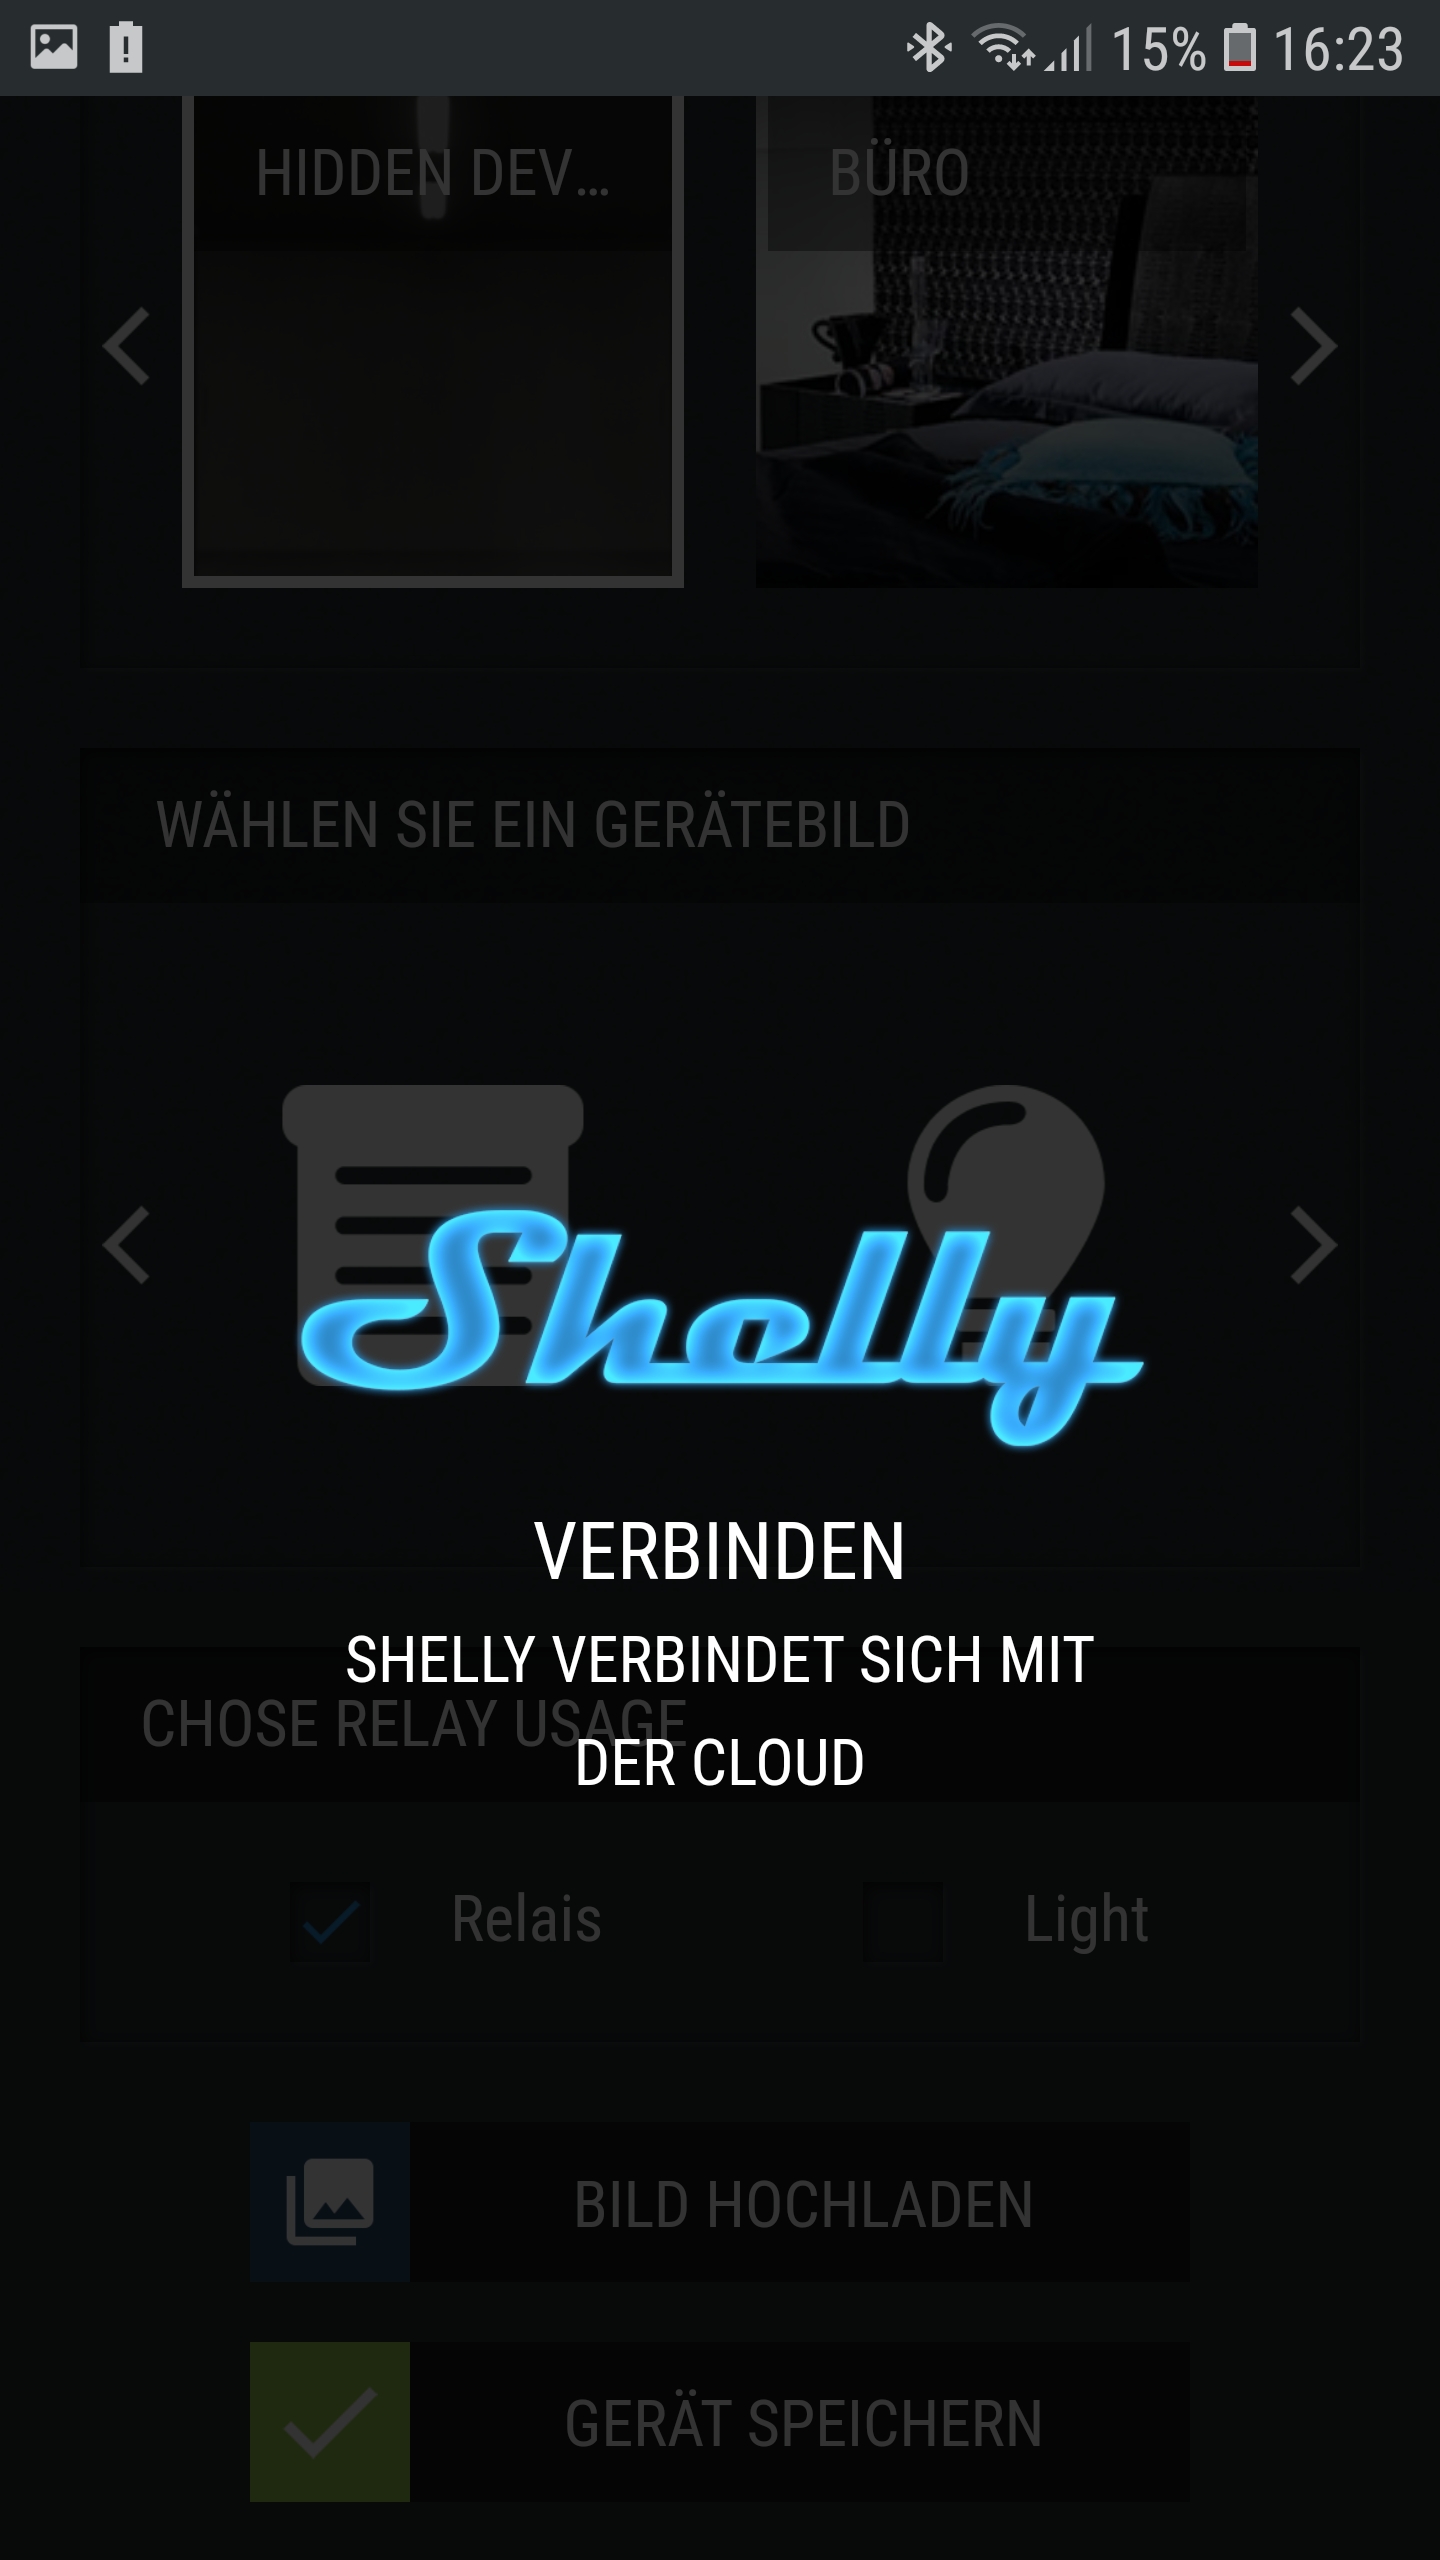 Verbindung mit der Shelly cloud